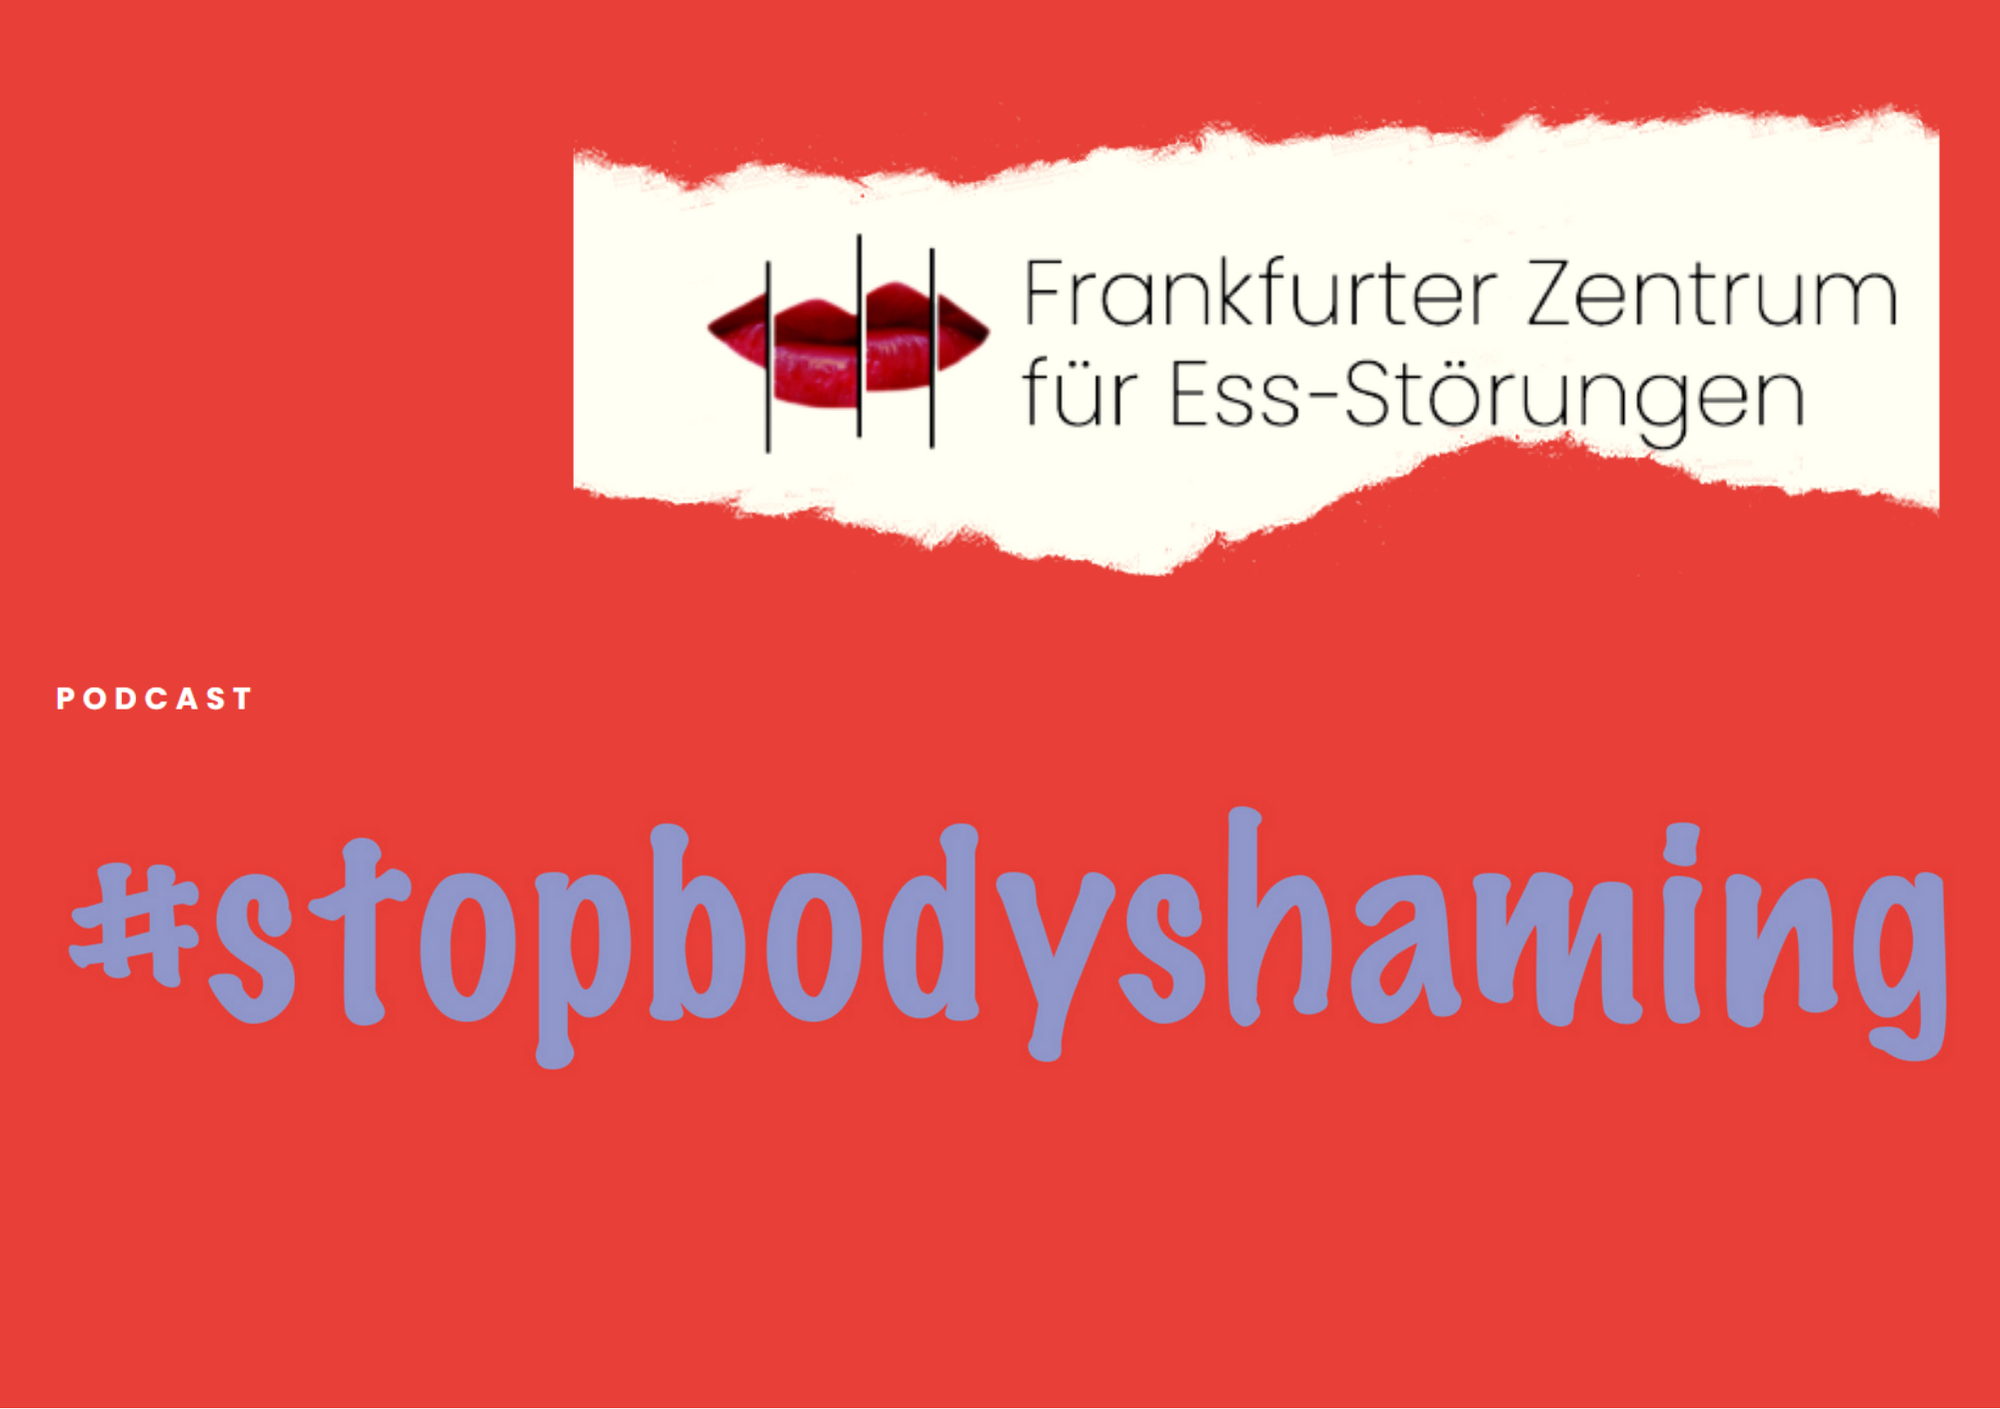 Podcast #stopbodyshaming